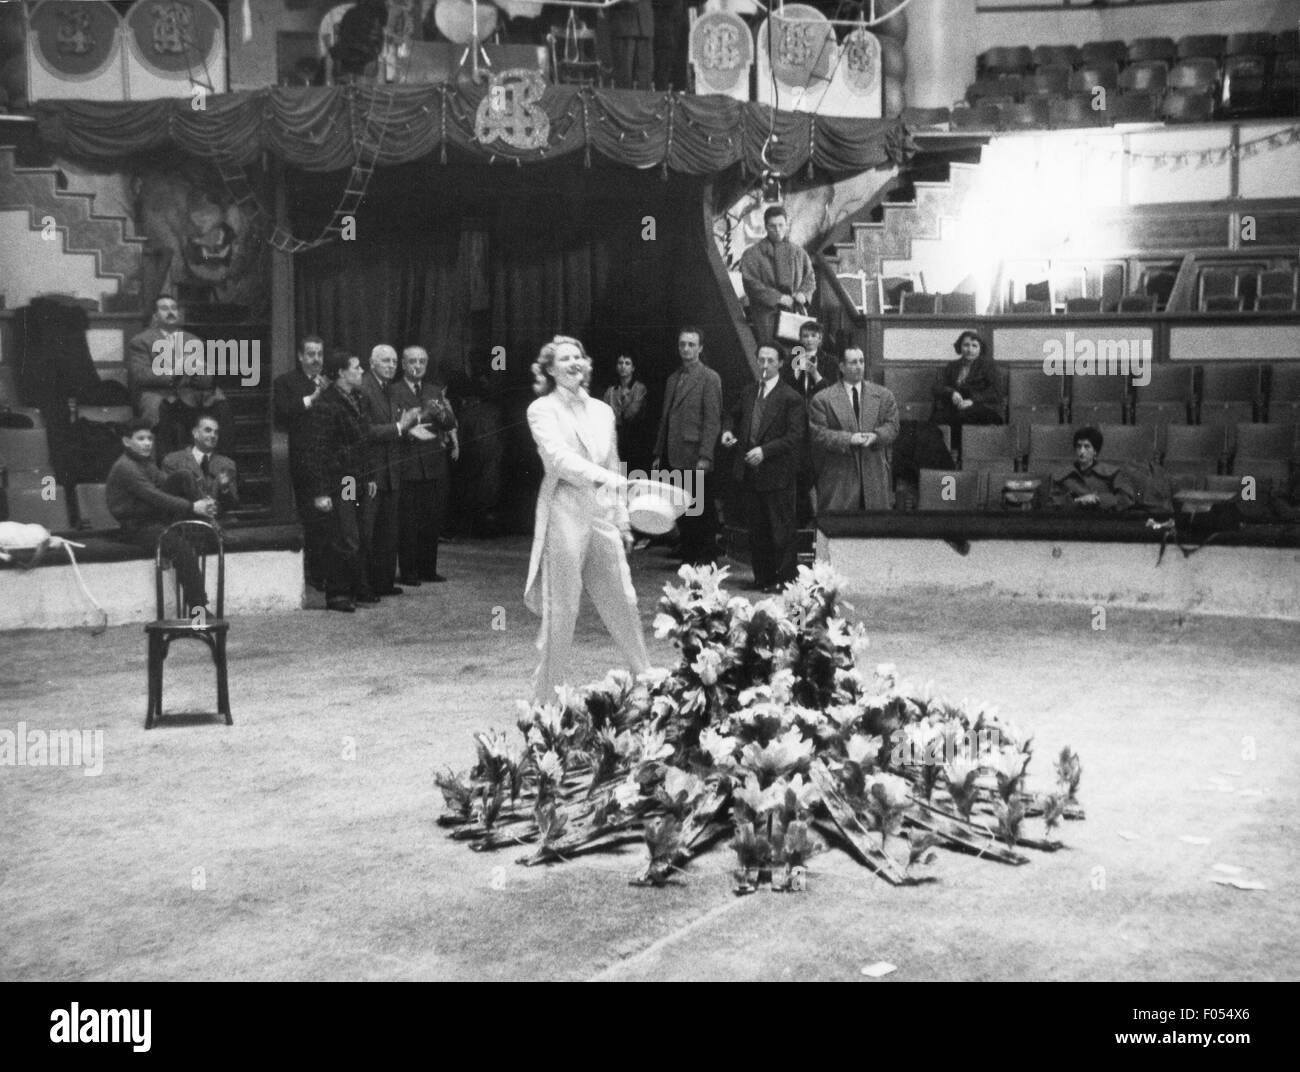 Bergman, Ingrid, 29.8.1915 - 29.8.1982, attrice svedese di mezza lunghezza, durante le prove di gala di Union des Artistes, Cirque d'Hiver, Parigi, 4.3.1957, Foto Stock